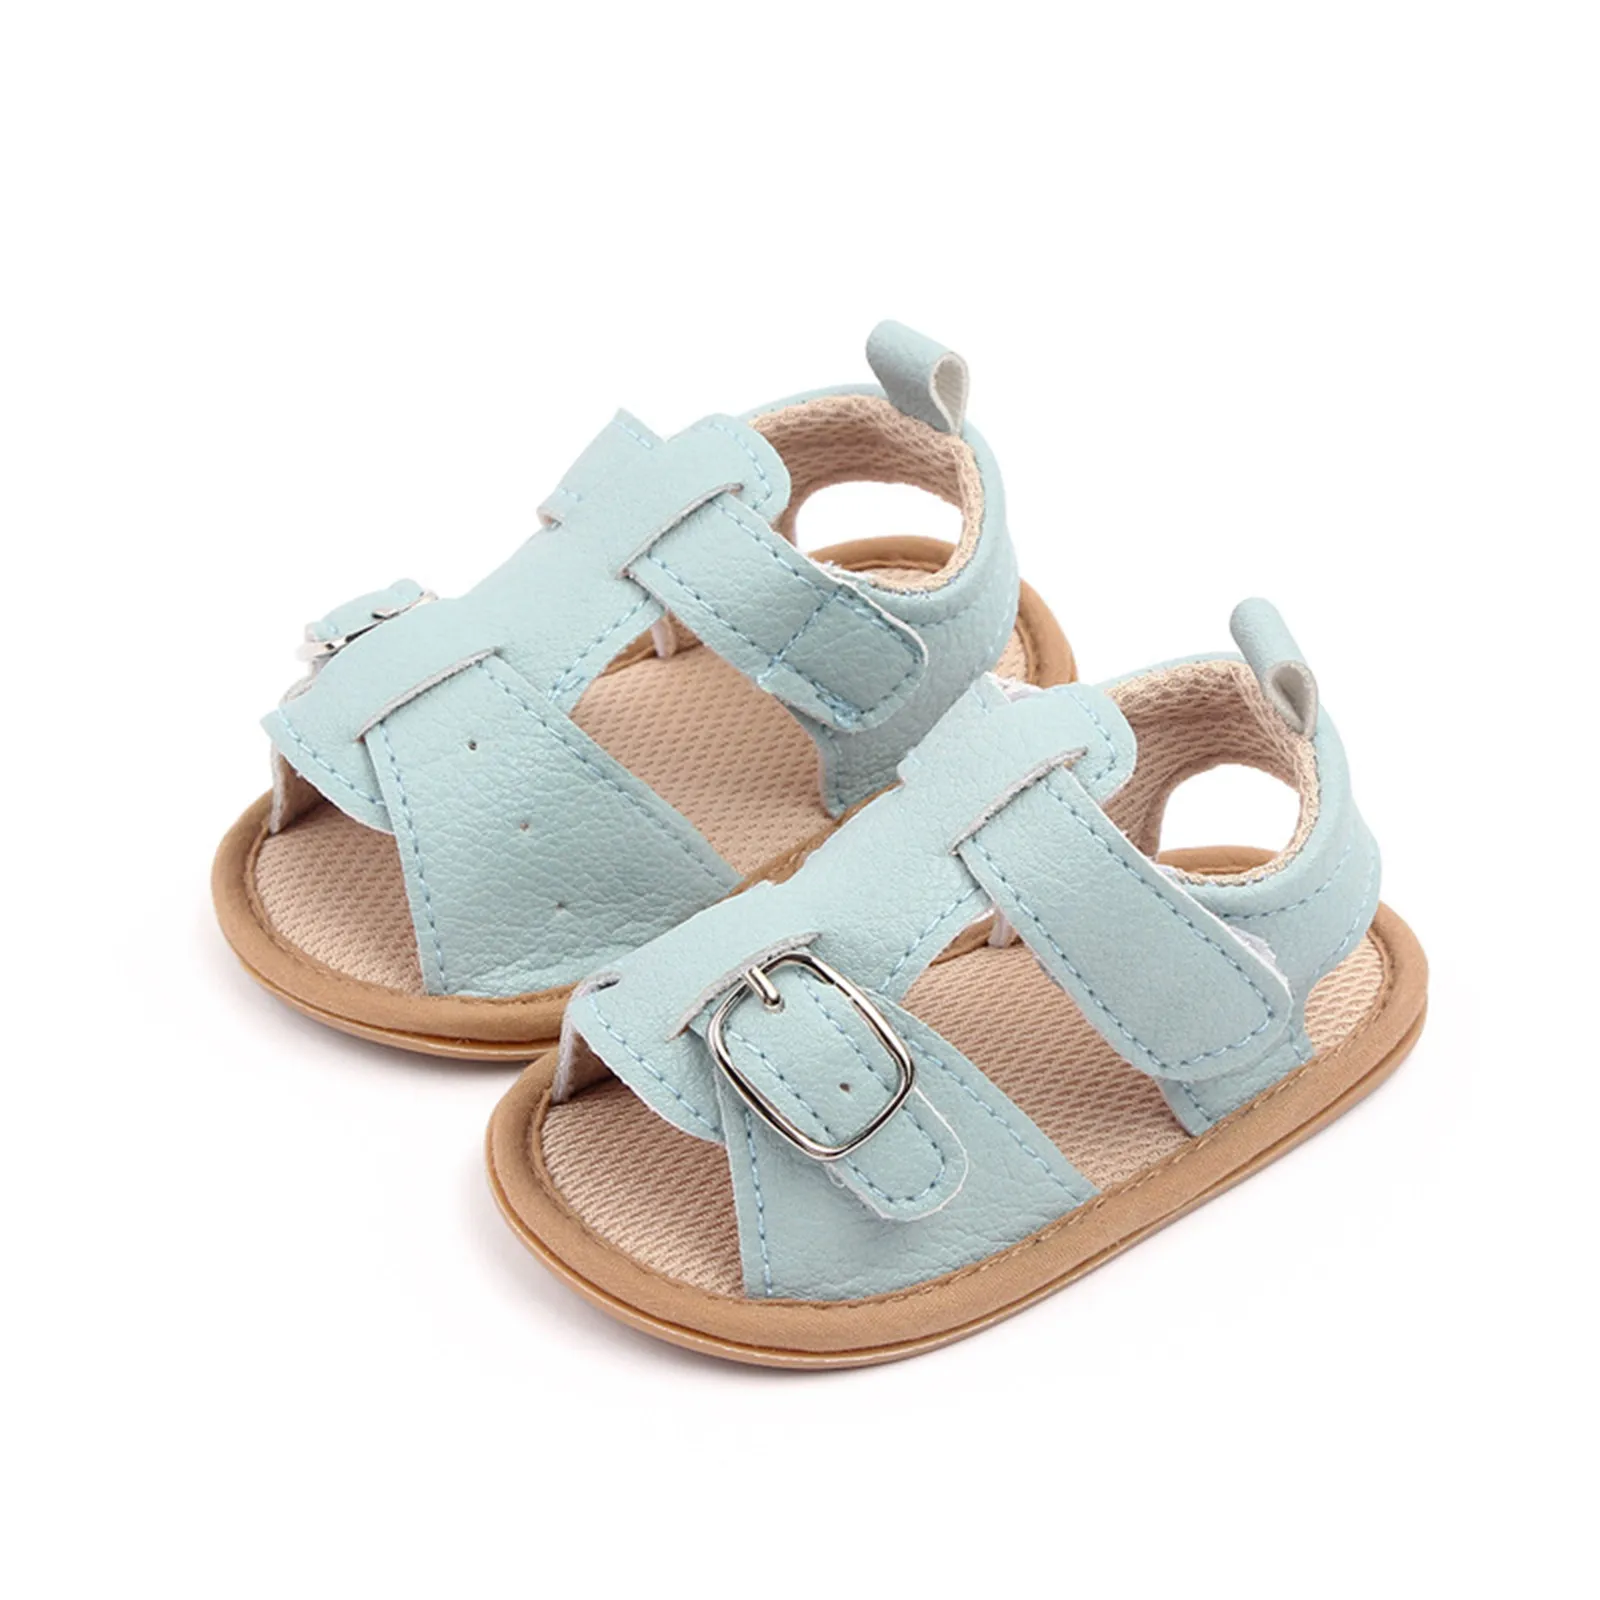 3-18 개월 아기 여름 샌들, 부드러운 단색 아기 신발, 버클 아기 침대 아기 신발, 첫 워커 아기 신발